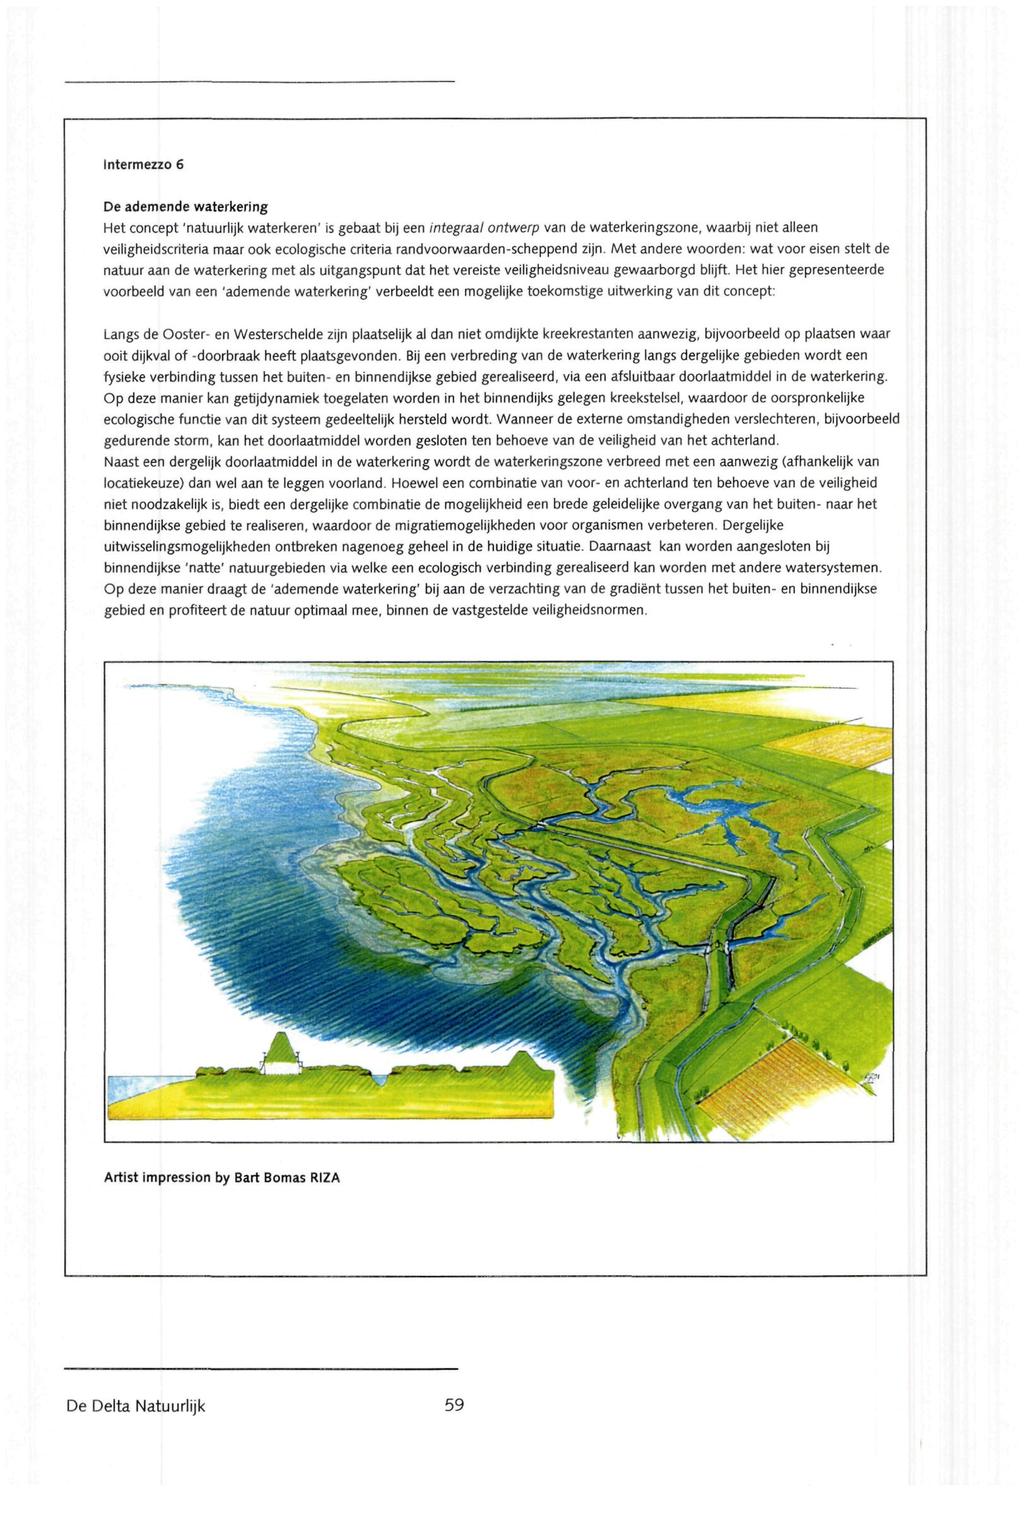 Intermezzo 6 Deademende waterkering Het concept 'natuurlijk waterkeren' isgebaat bij een integraal ontwerp van de waterkeringszone, waarbij niet alleen veiligheidscriteria maar ook ecologische